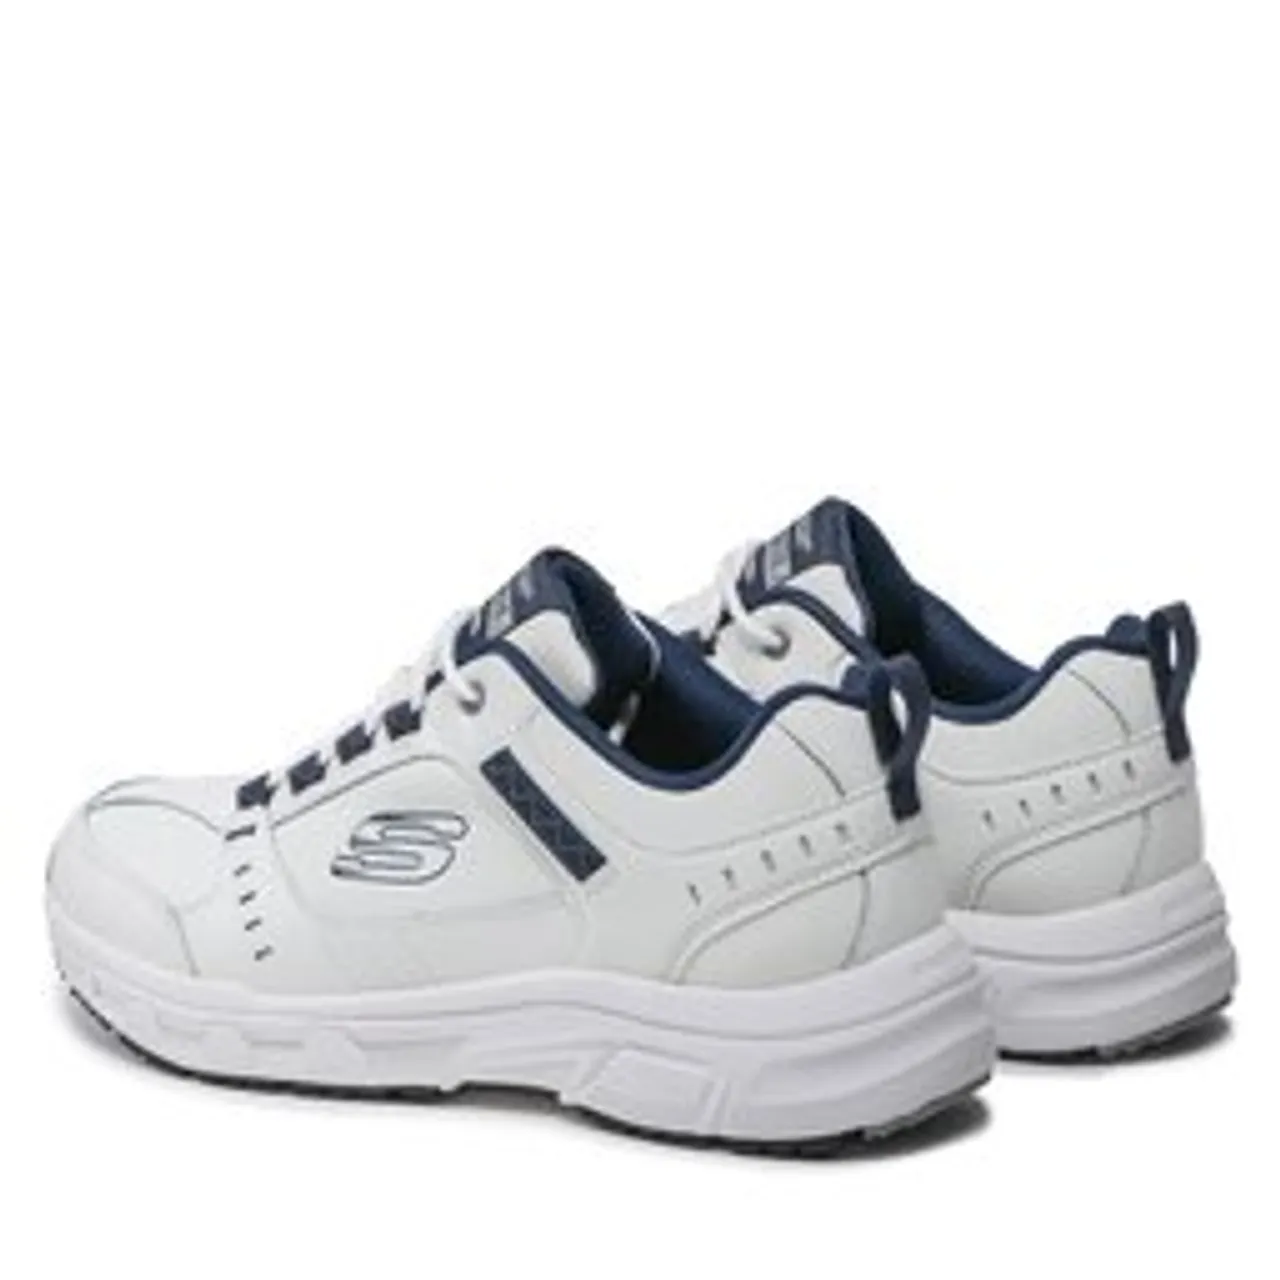 Sneakers Skechers Oak Canyon-Redwick 51896/WNV White/Navy